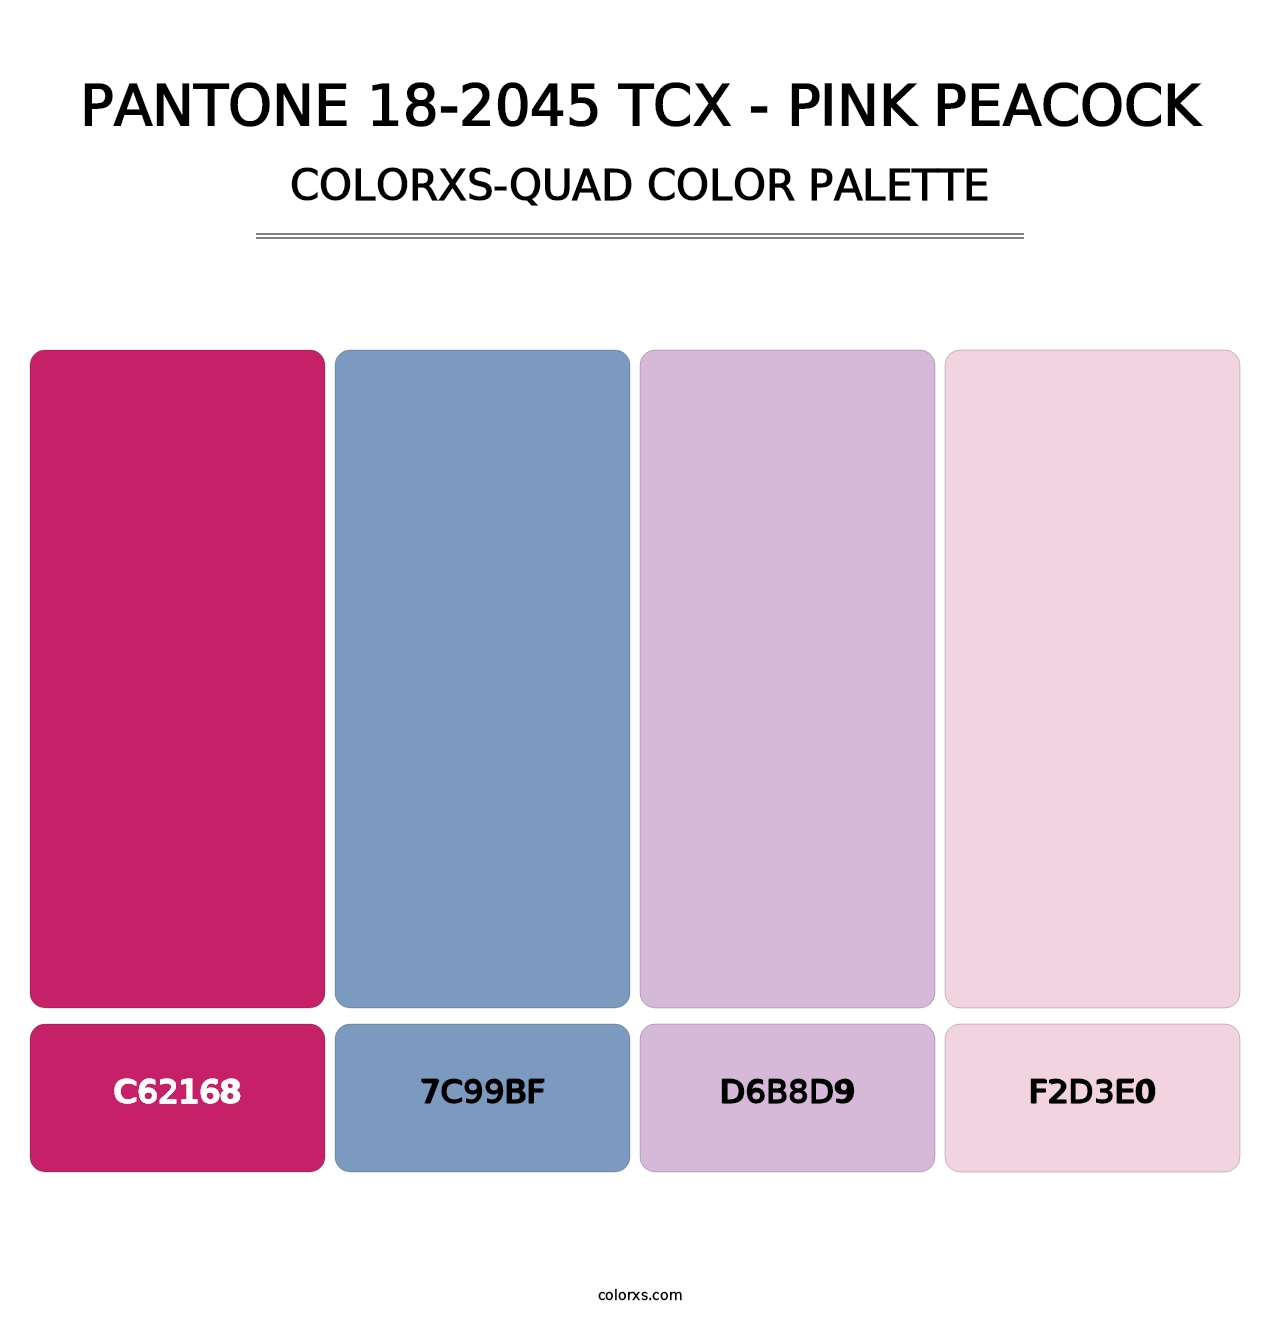 PANTONE 18-2045 TCX - Pink Peacock - Colorxs Quad Palette